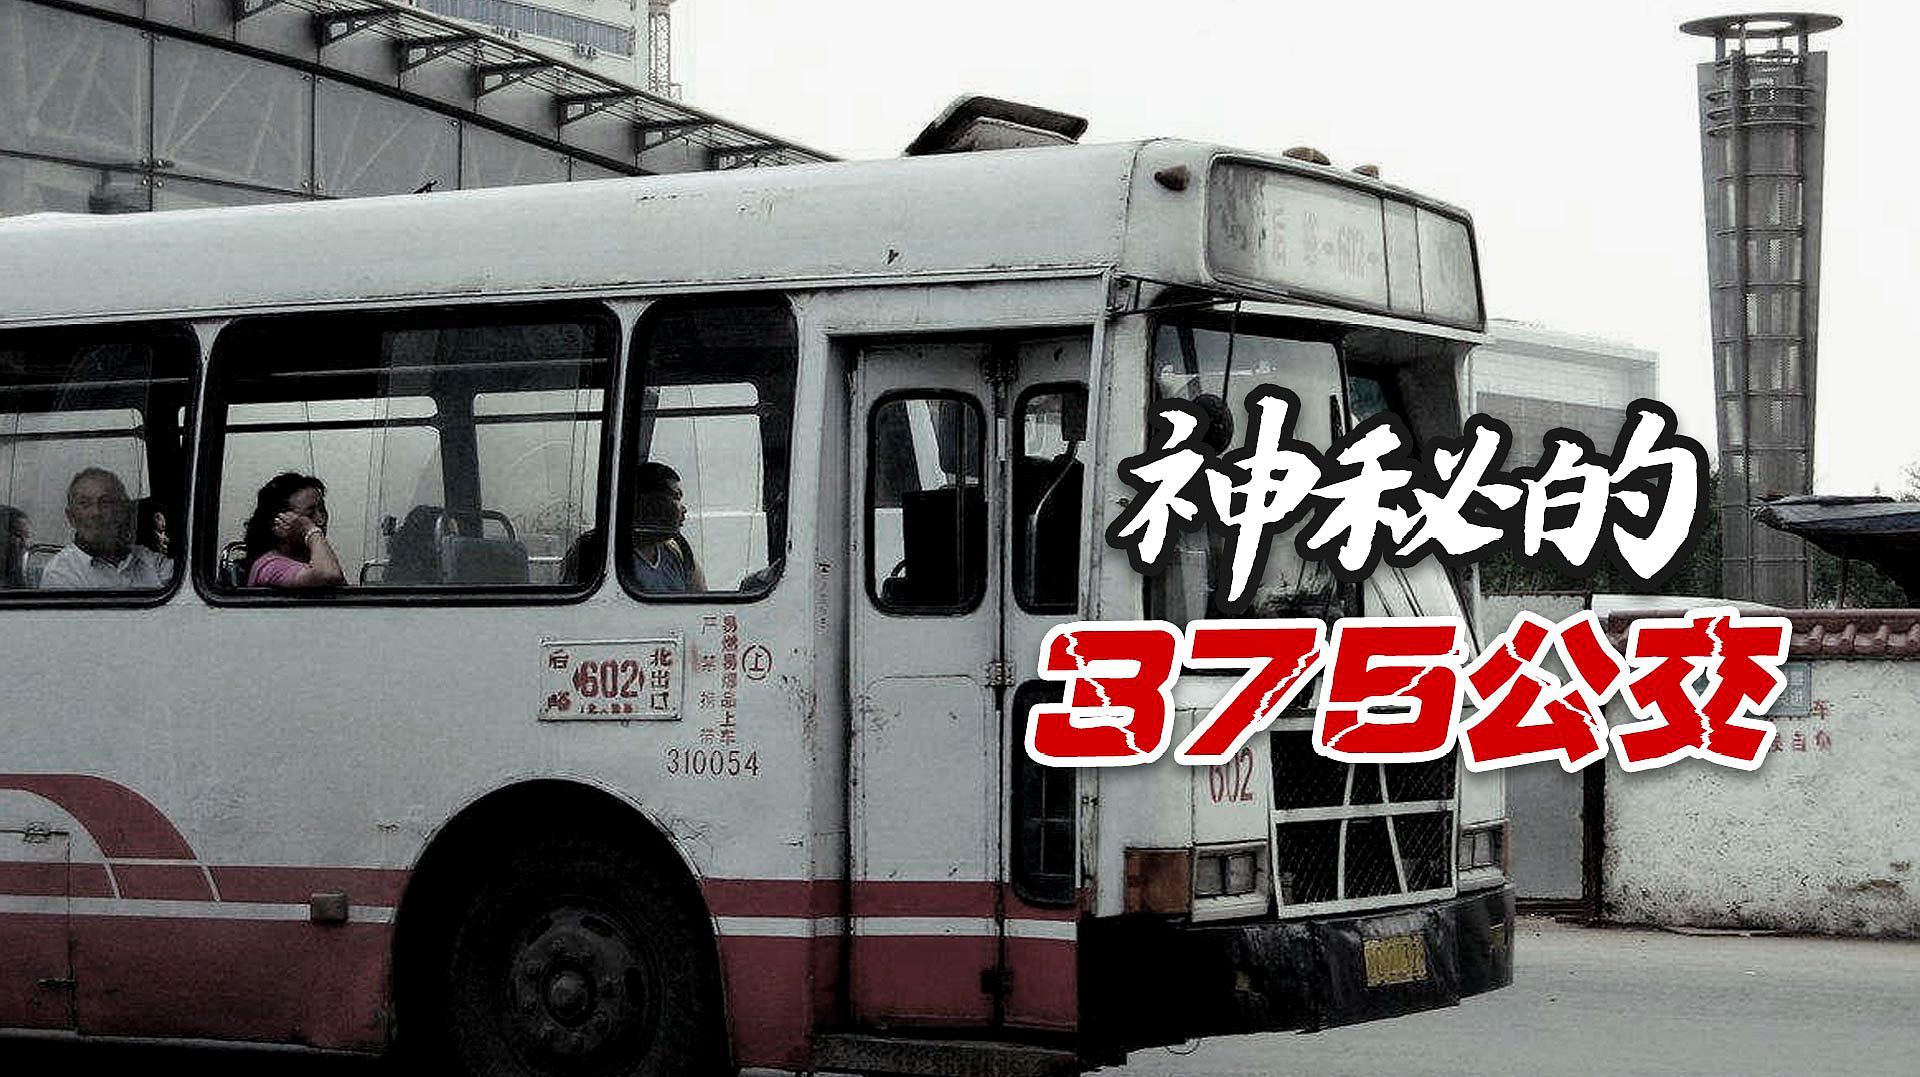 北京375公交车灵异事件,曾被传得神乎其神,其实故事真假参半